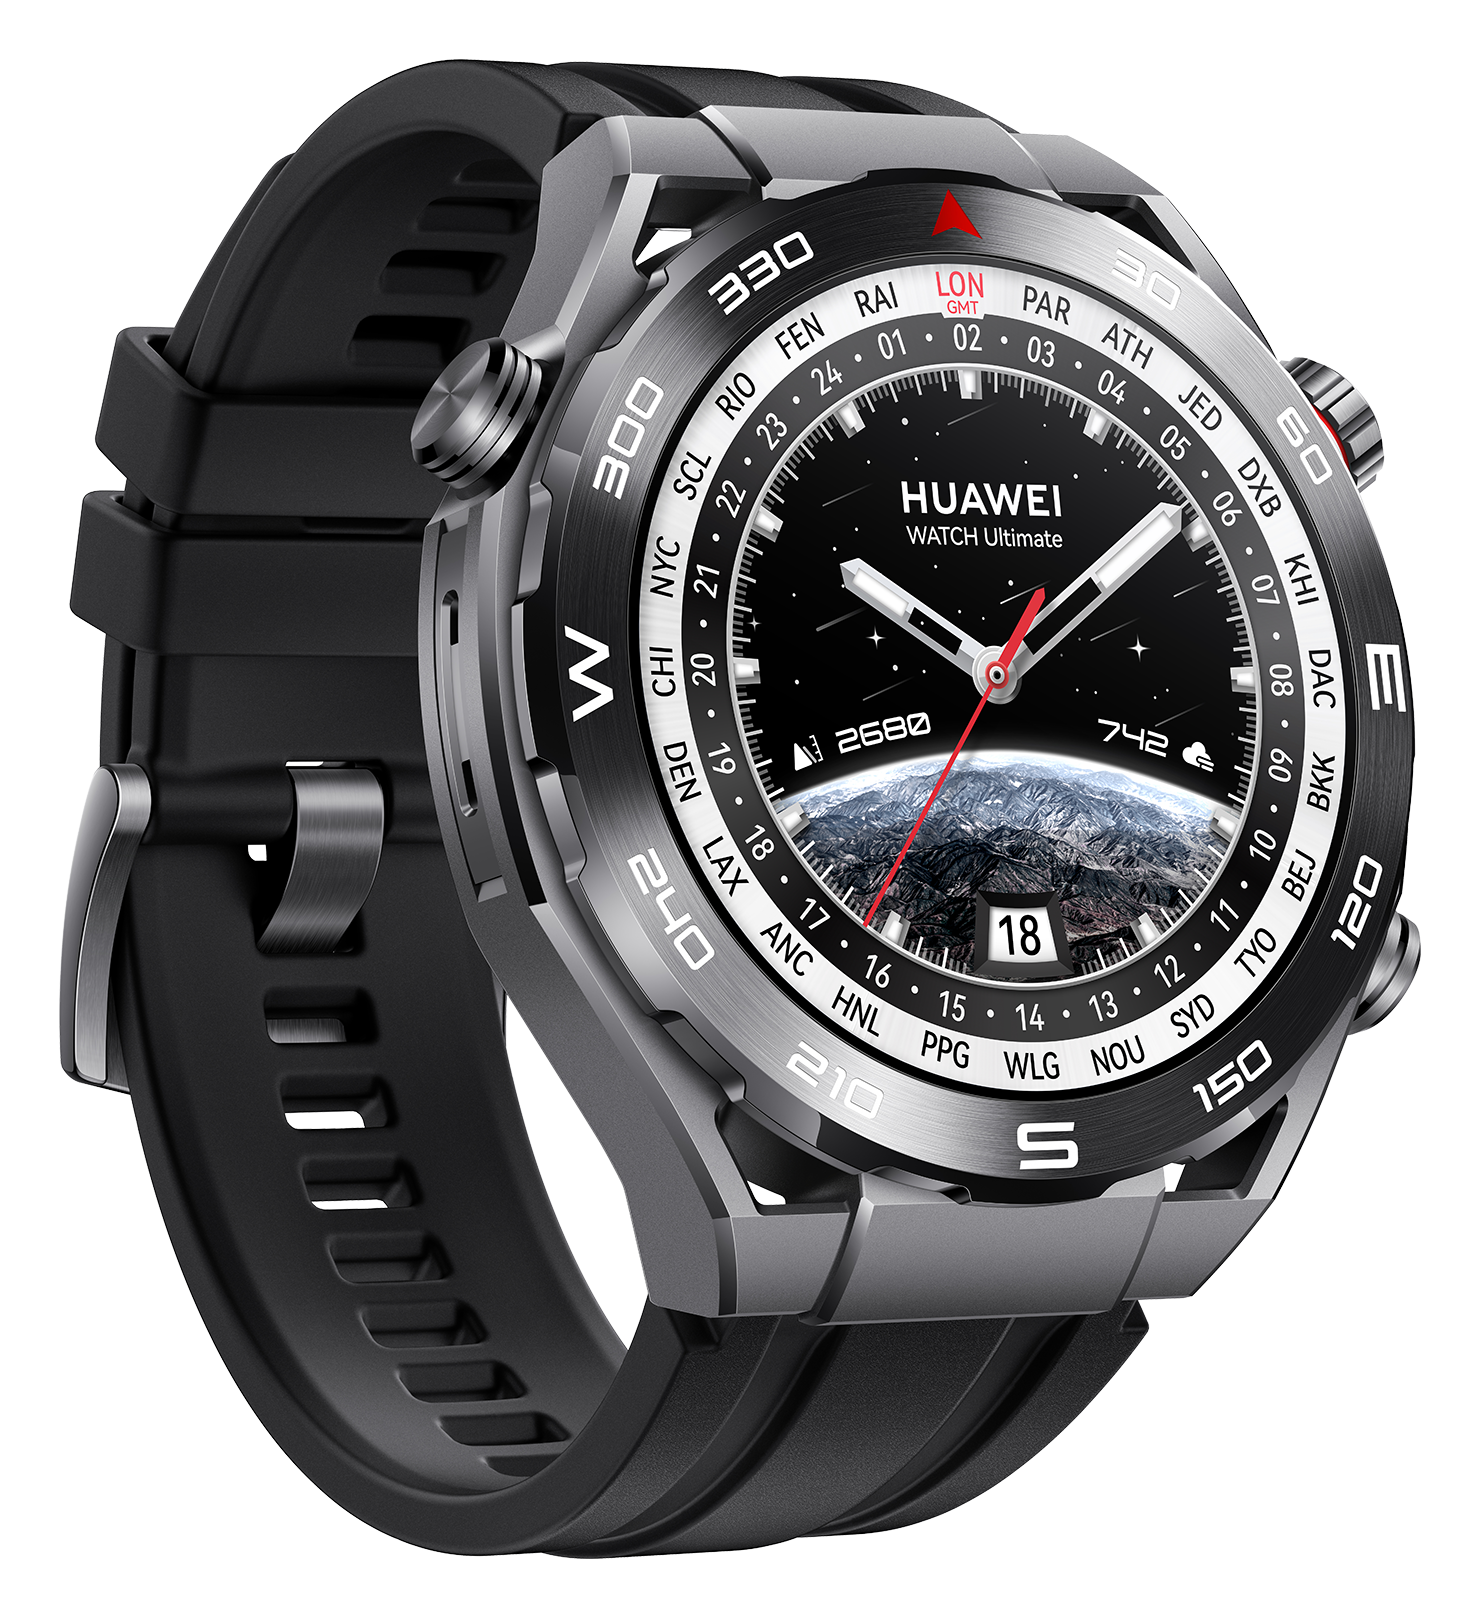 1 Huawei Watch Ultimate 1